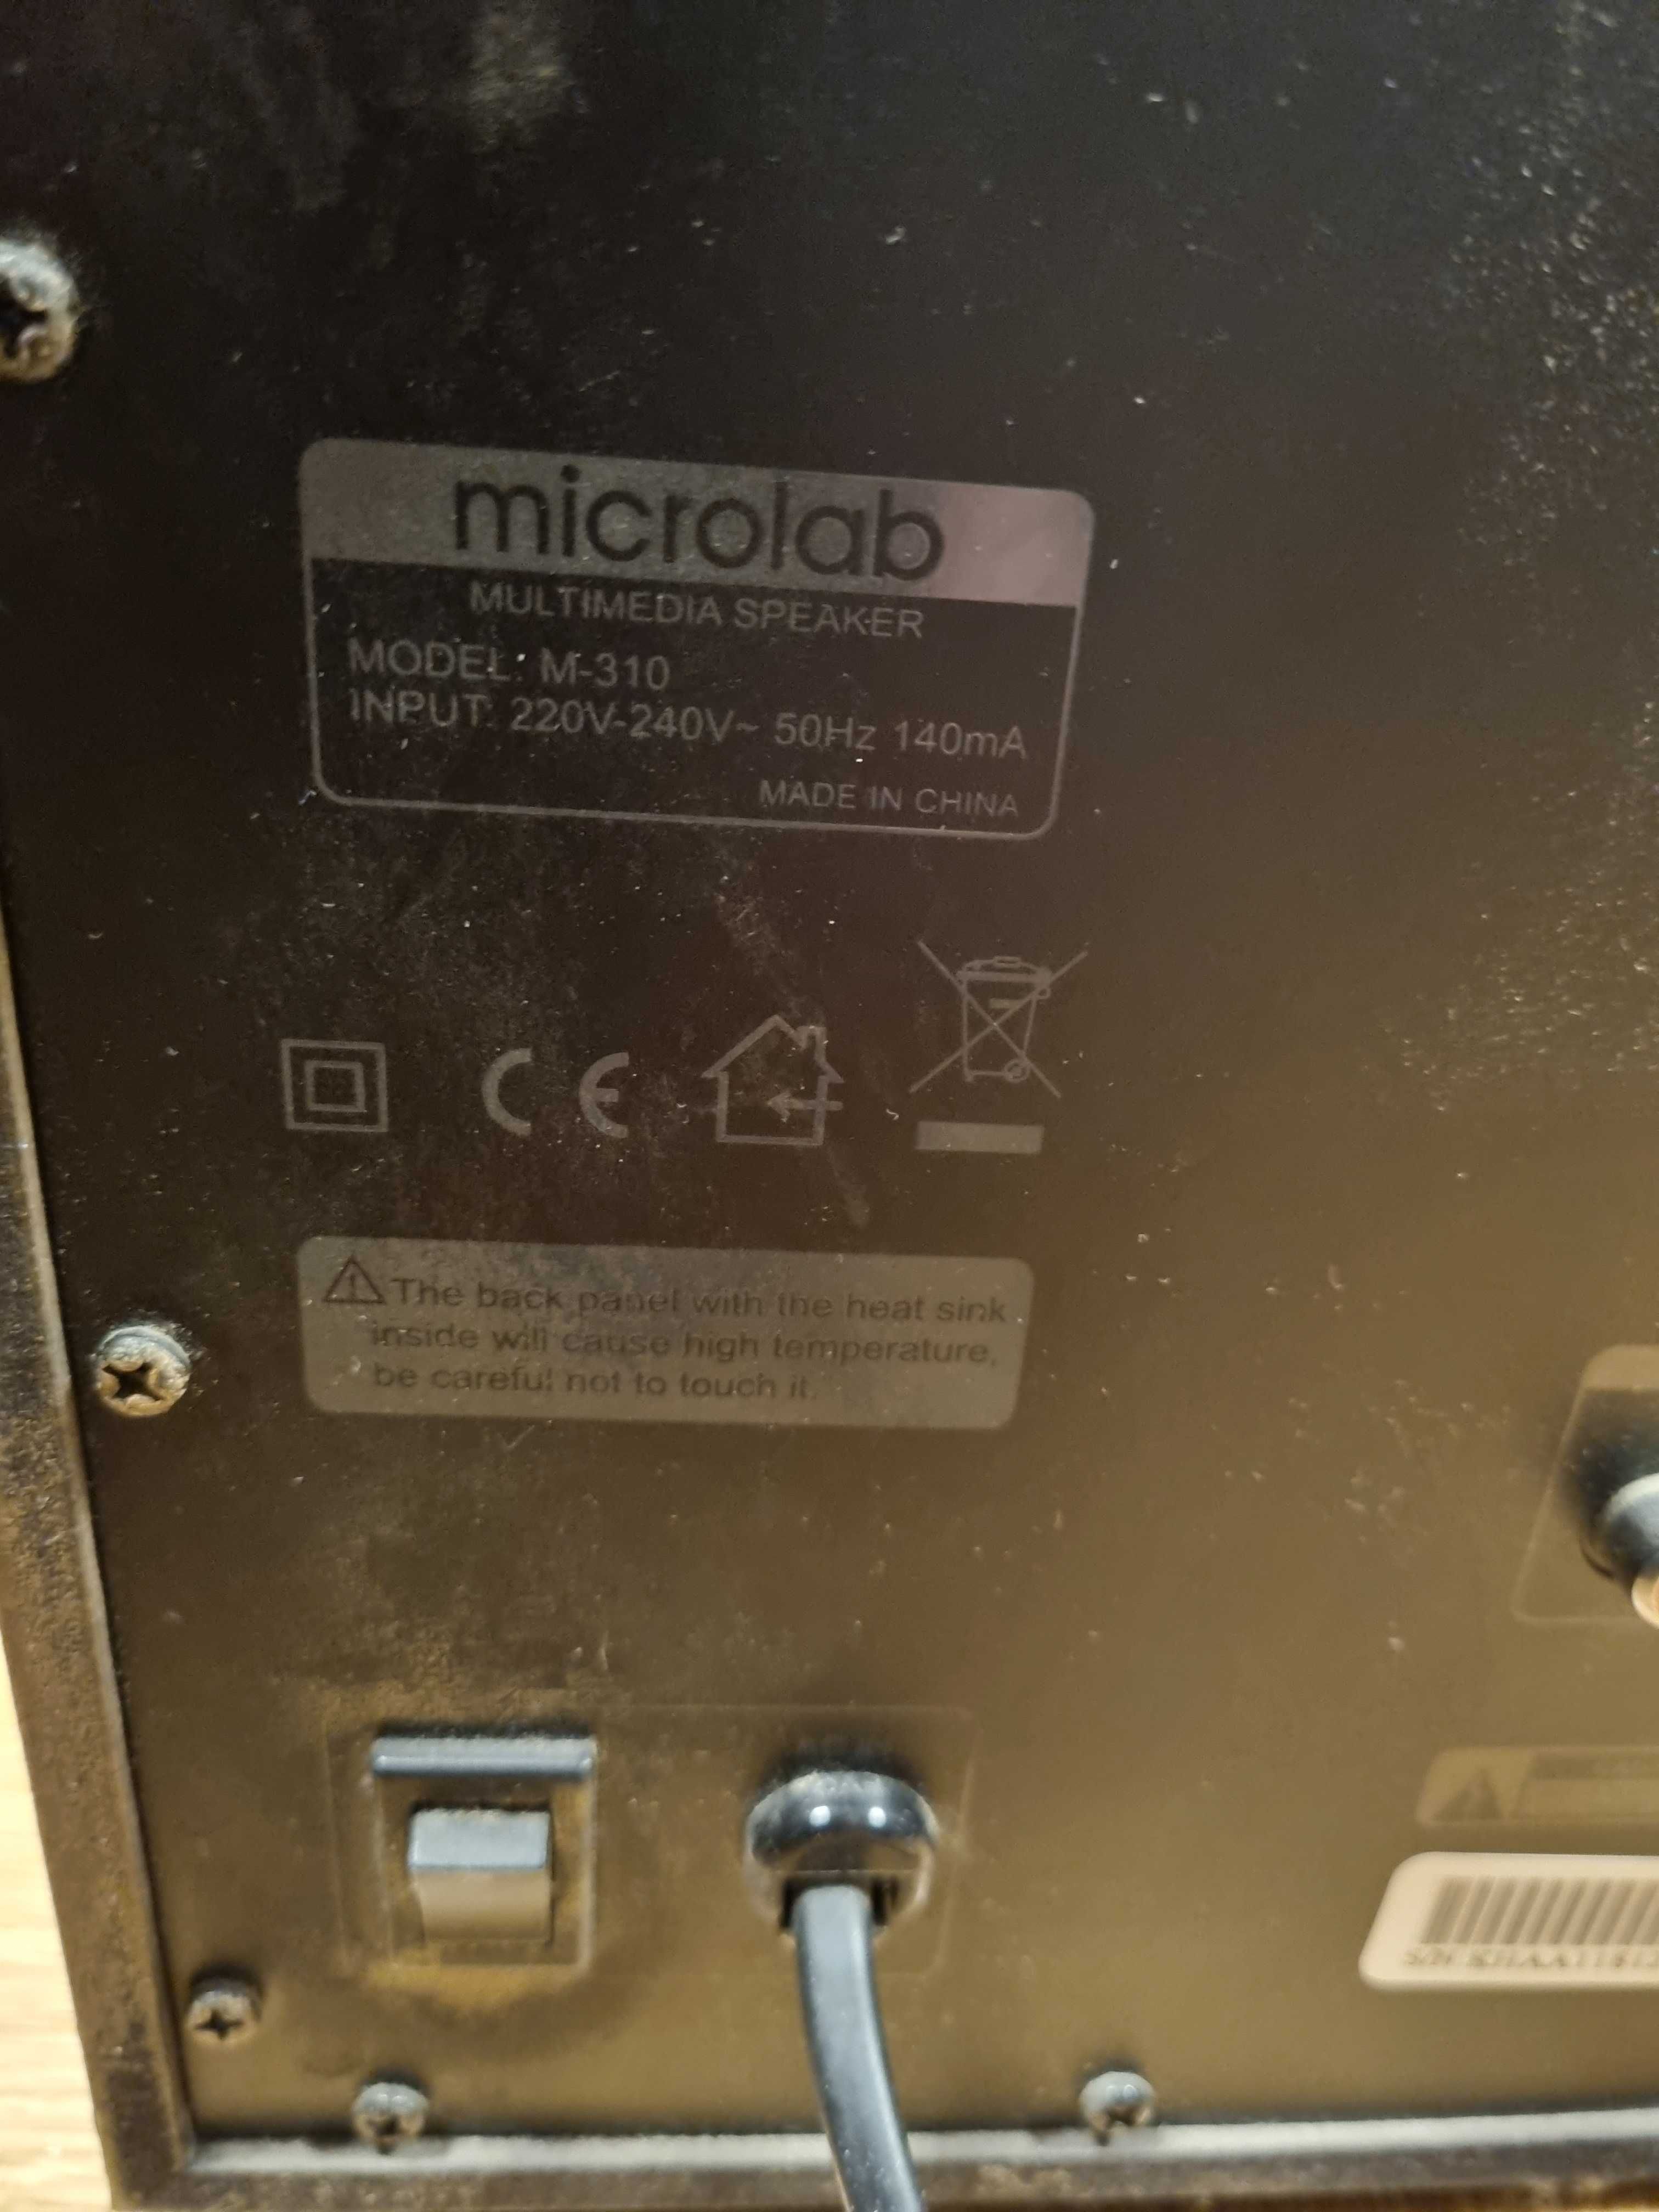 Аудио система Microlab M 310 2.1 40W